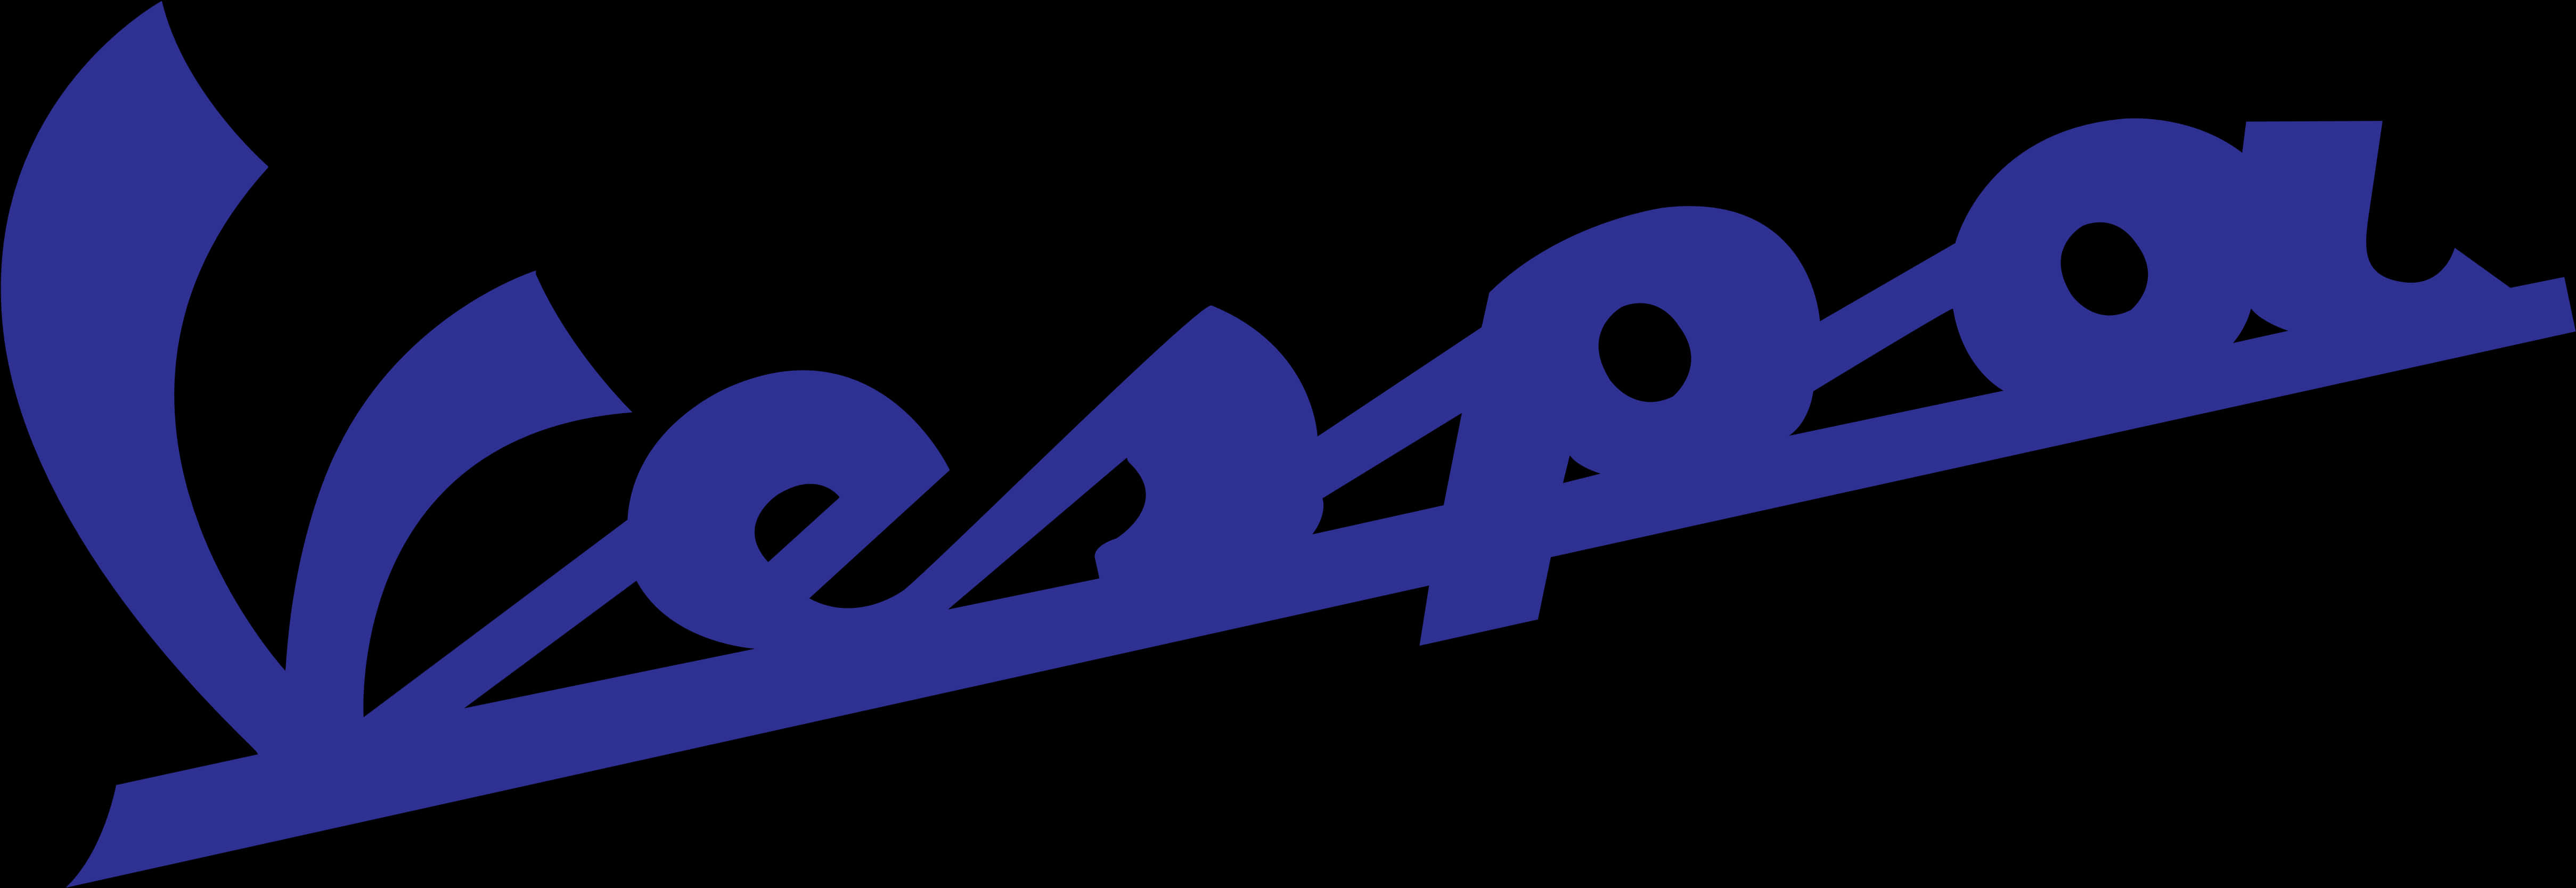 Vespa Logo Blue Background PNG image